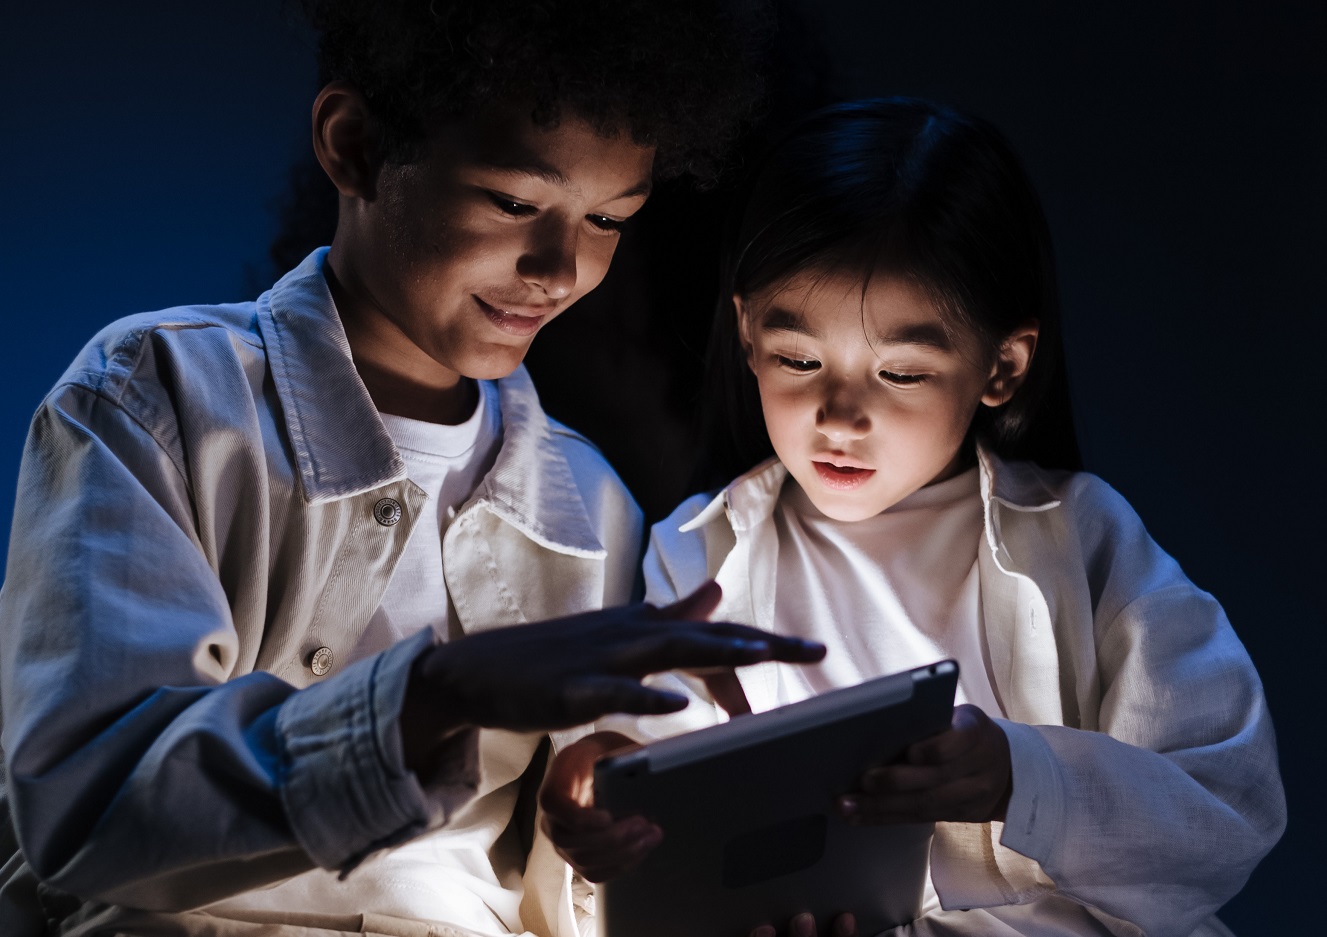 Zwei Kinder sehen auf ein I-Pad, welches ell im Dunkeln leuchtet.